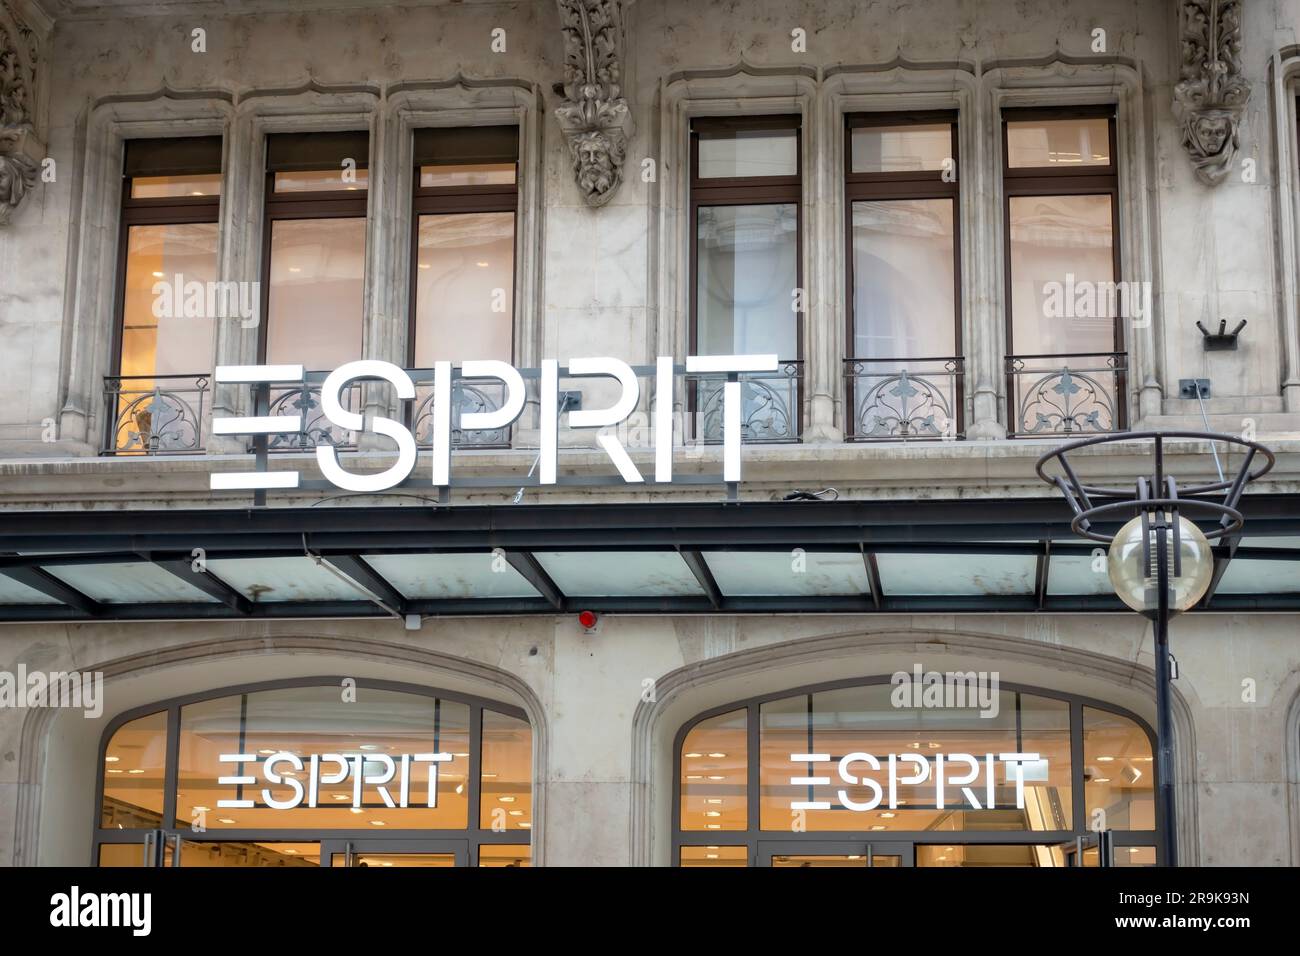 Esprit clothing shop -Fotos und -Bildmaterial in hoher Auflösung – Alamy